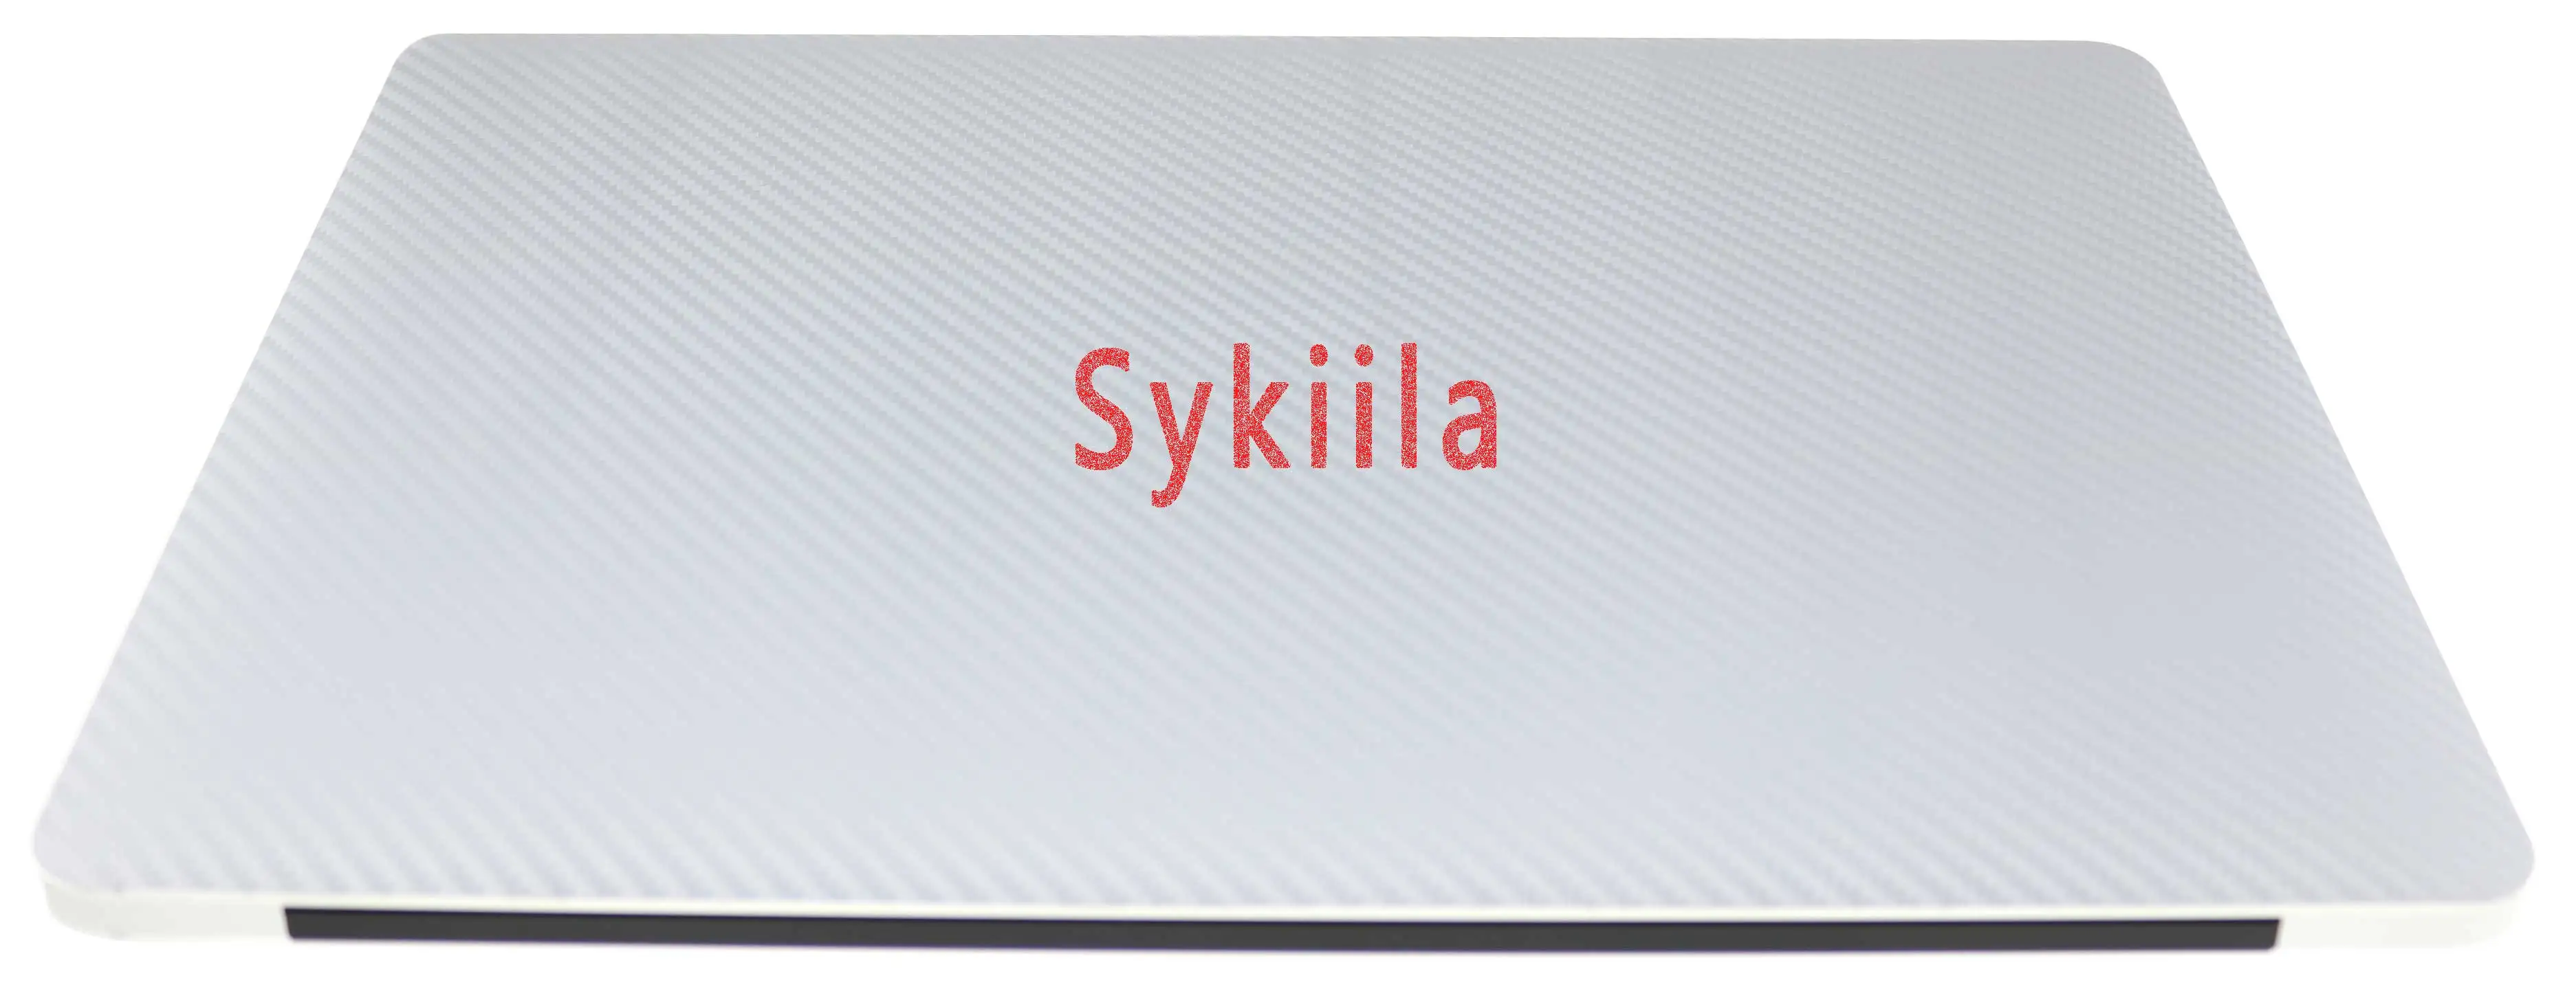 Sykiia для Macbook кожи из углеродного волокна Air 11 13 Pro 13 15 16 retina 12 крышка всего тела Защитная Наклейка Виниловая наклейка серебро